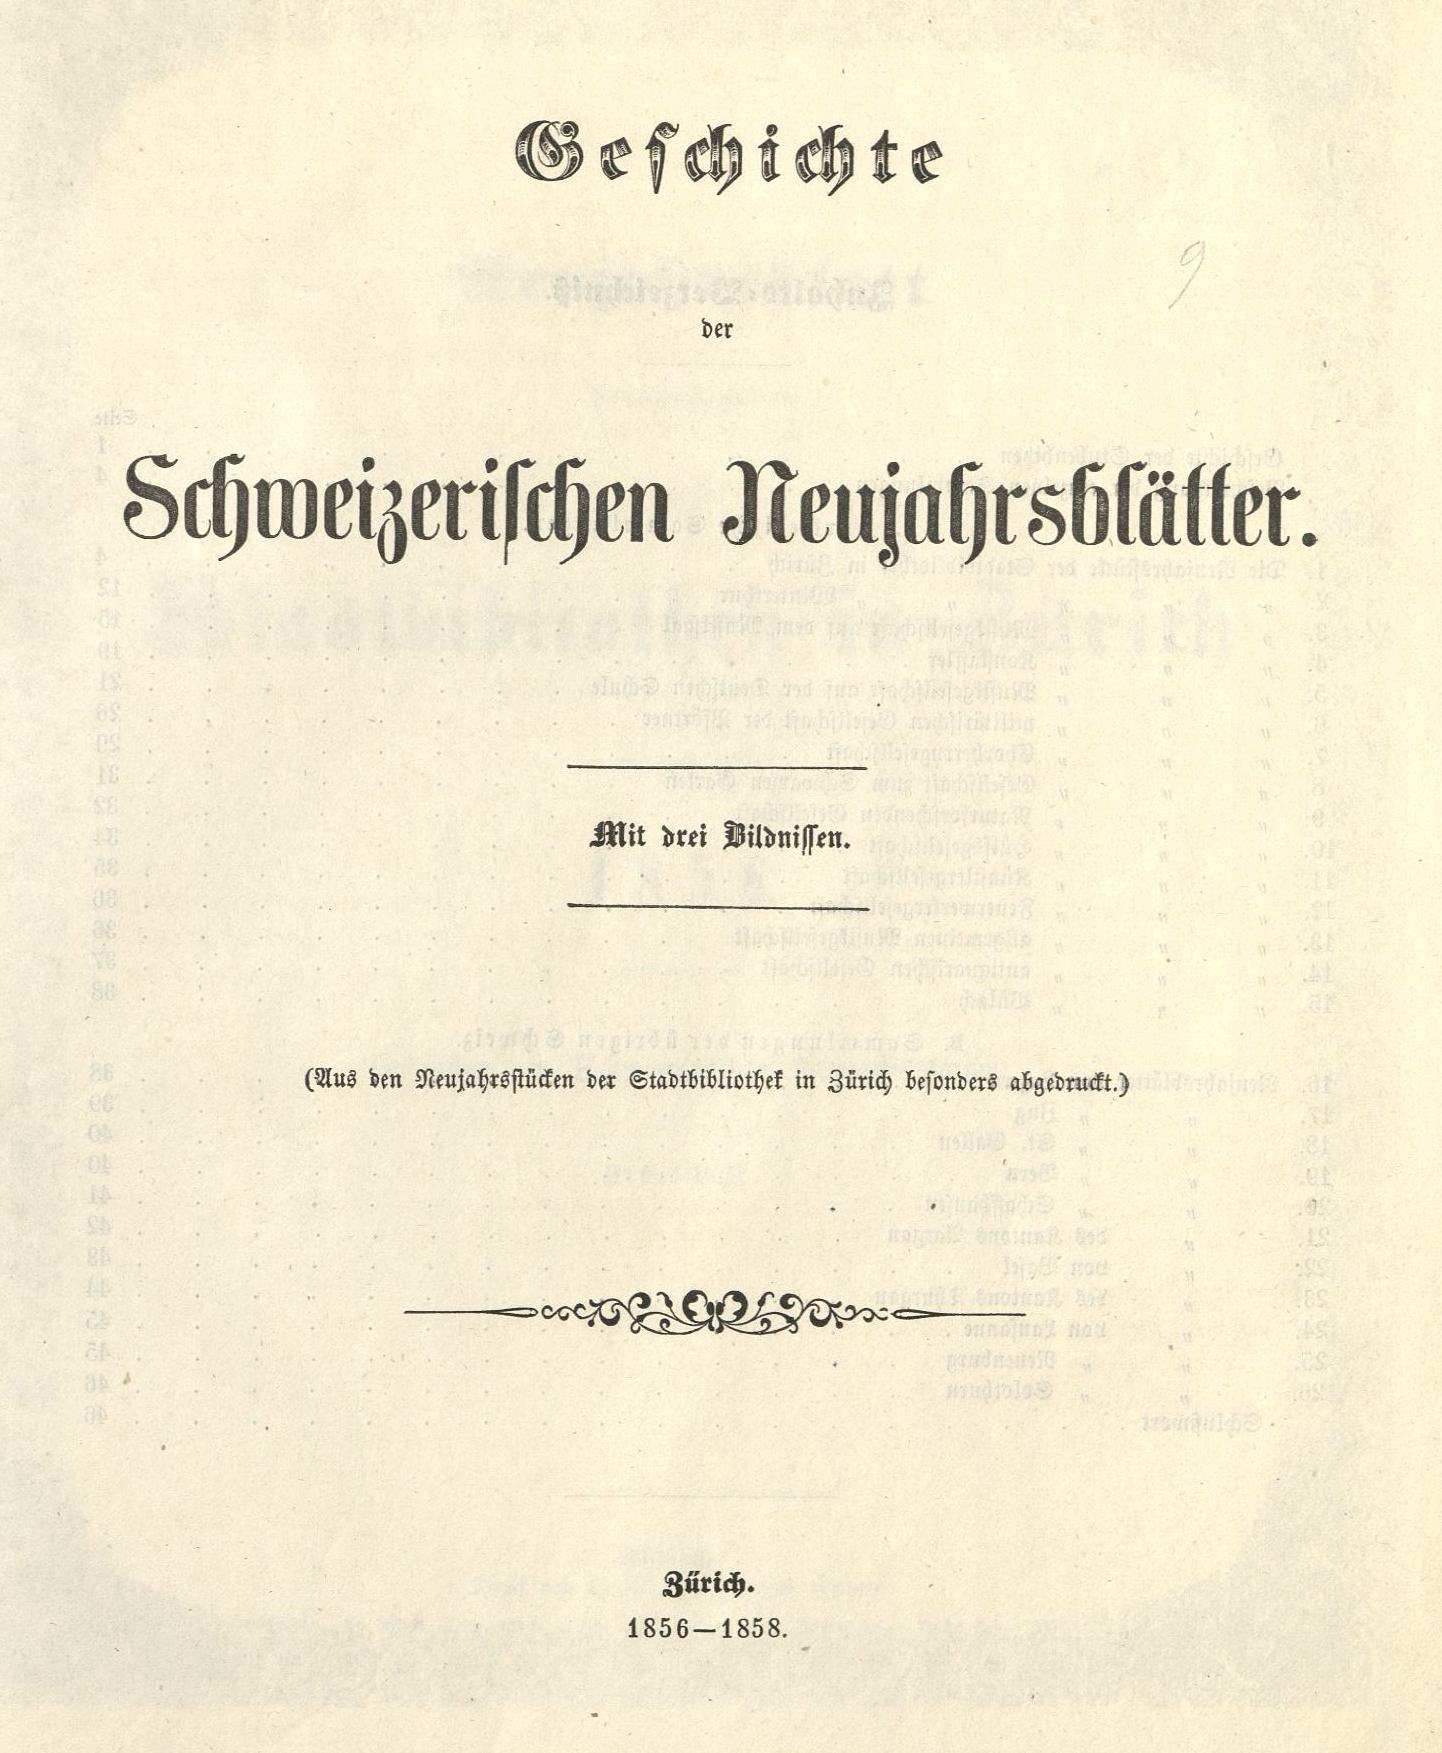 Neujahrsblätter Stadtbibliothek Zürich 1856 - 1858  Geschichte der Schweizerishen Neujahrsblätter